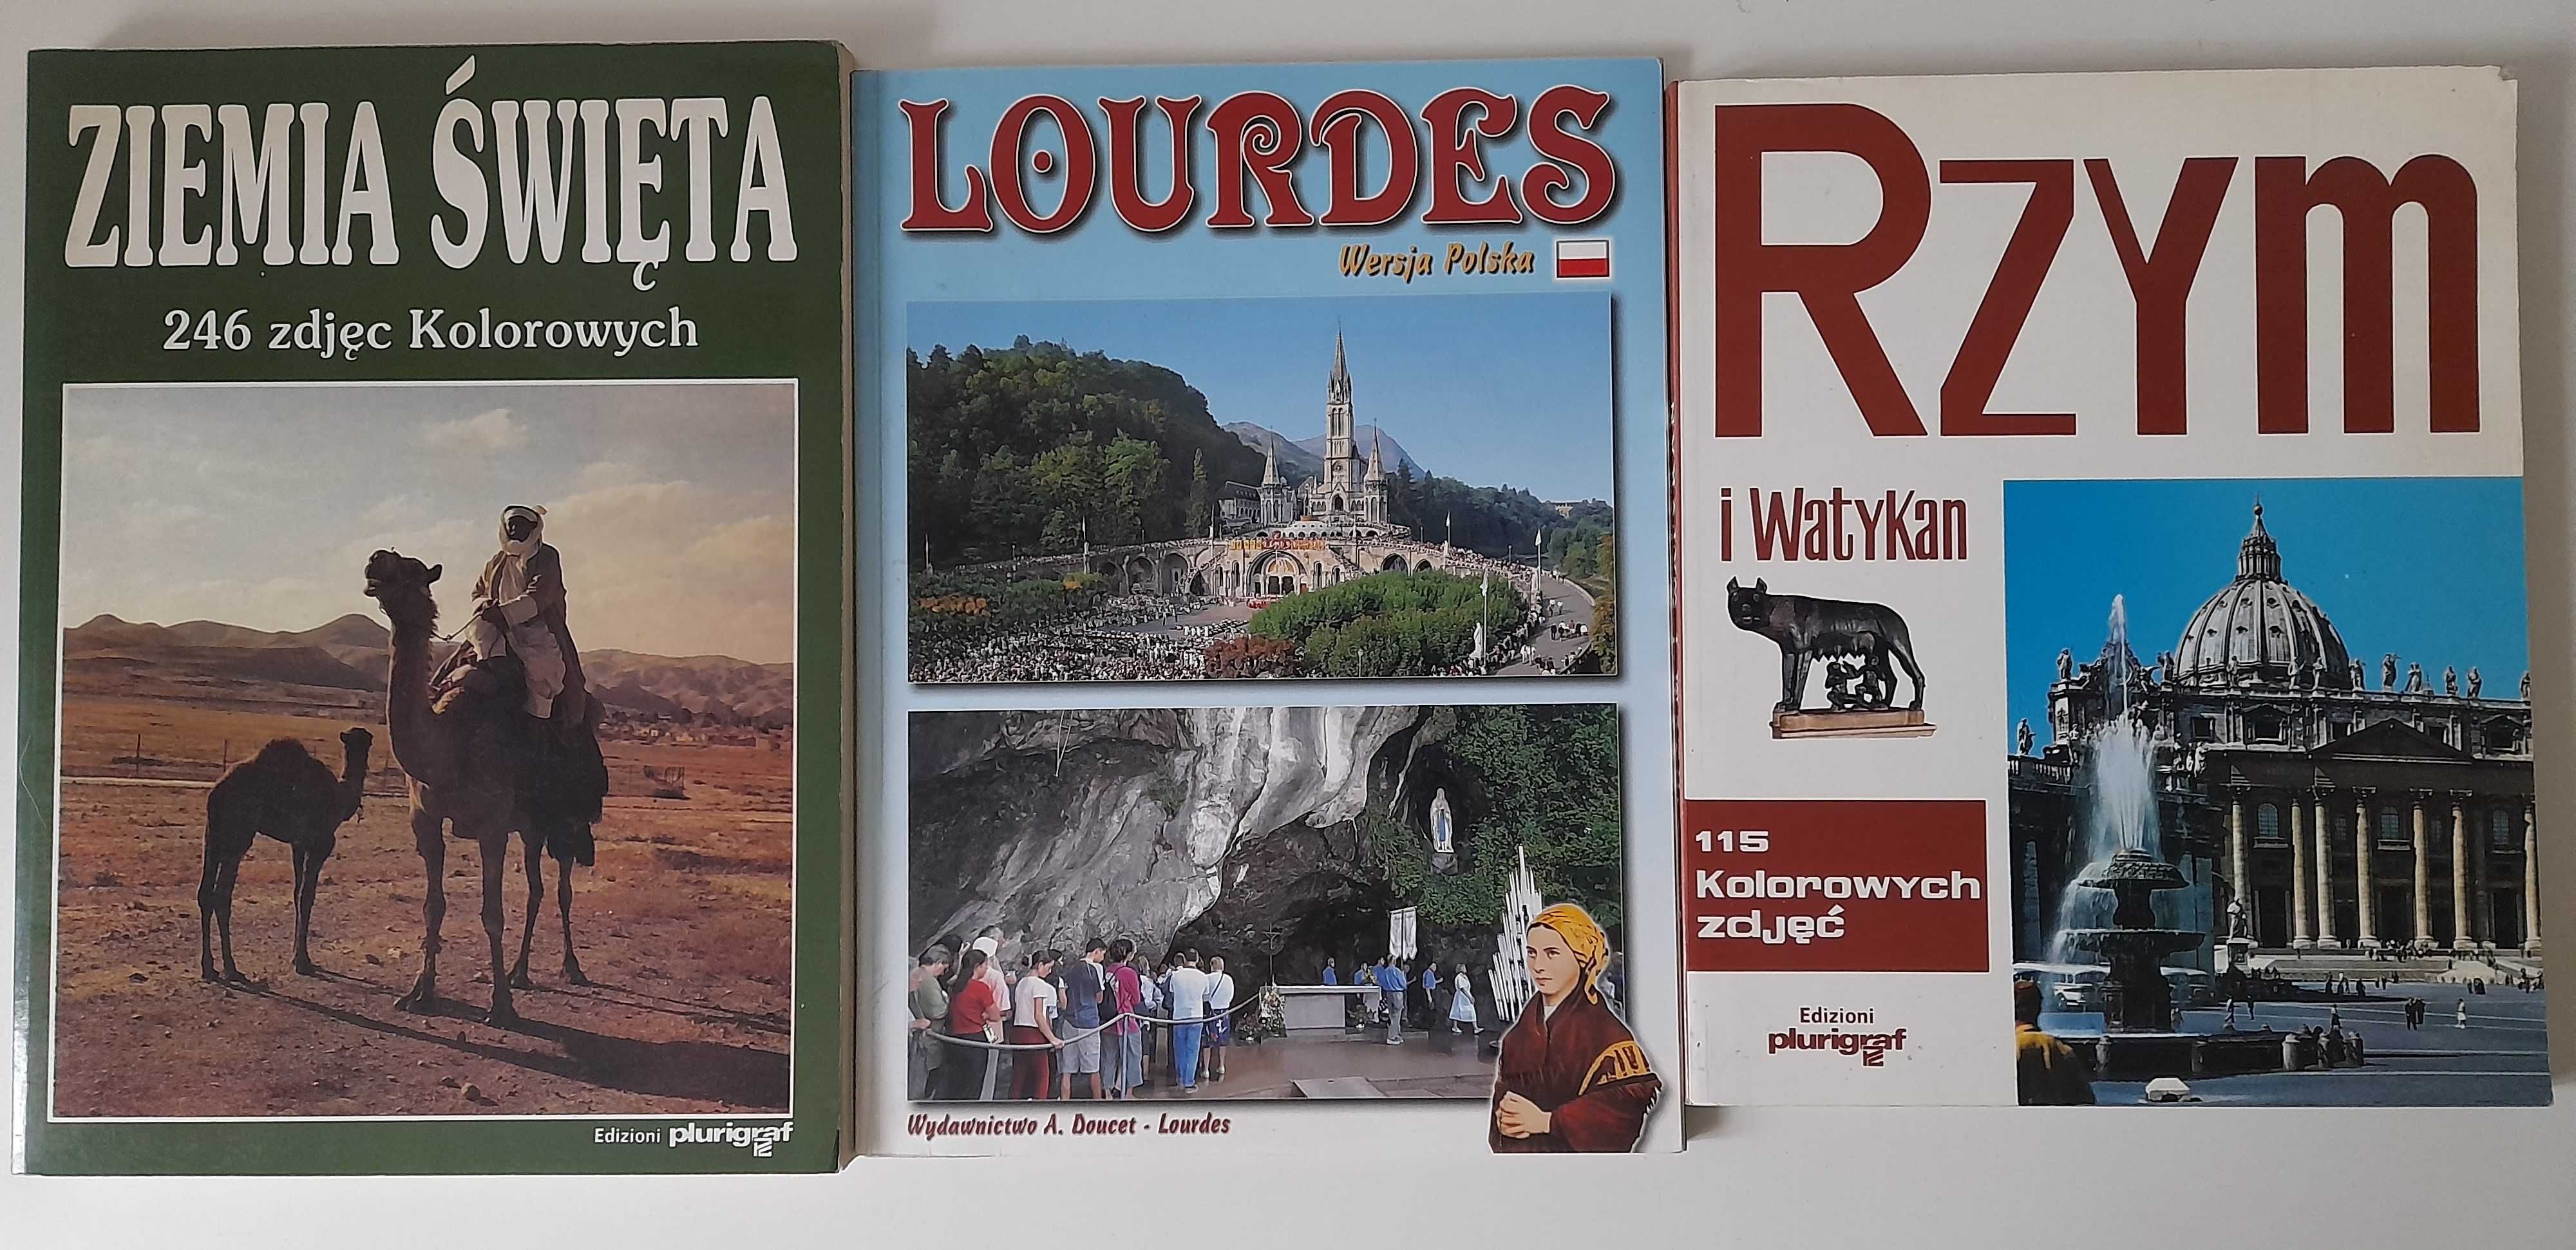 Albumy miejsc świętych Ziemia Święta, Lourdes, Rzym i Watykan